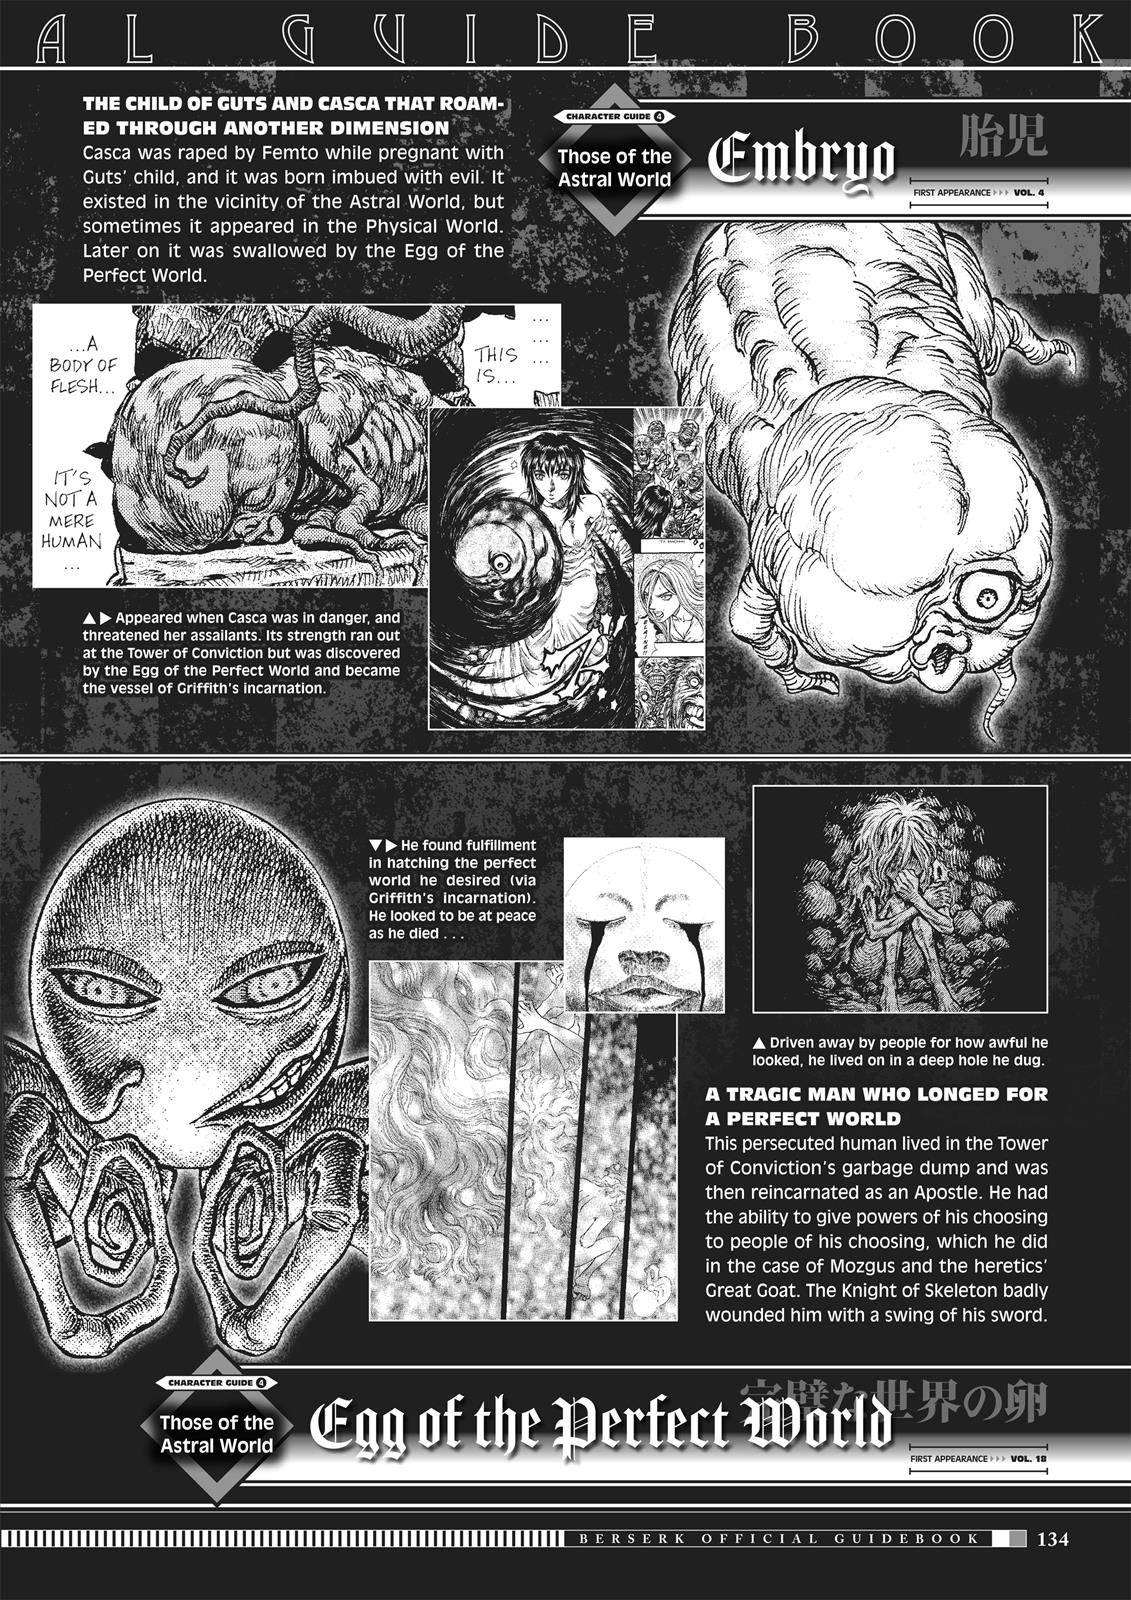 Berserk Manga Chapter 350.5 image 132